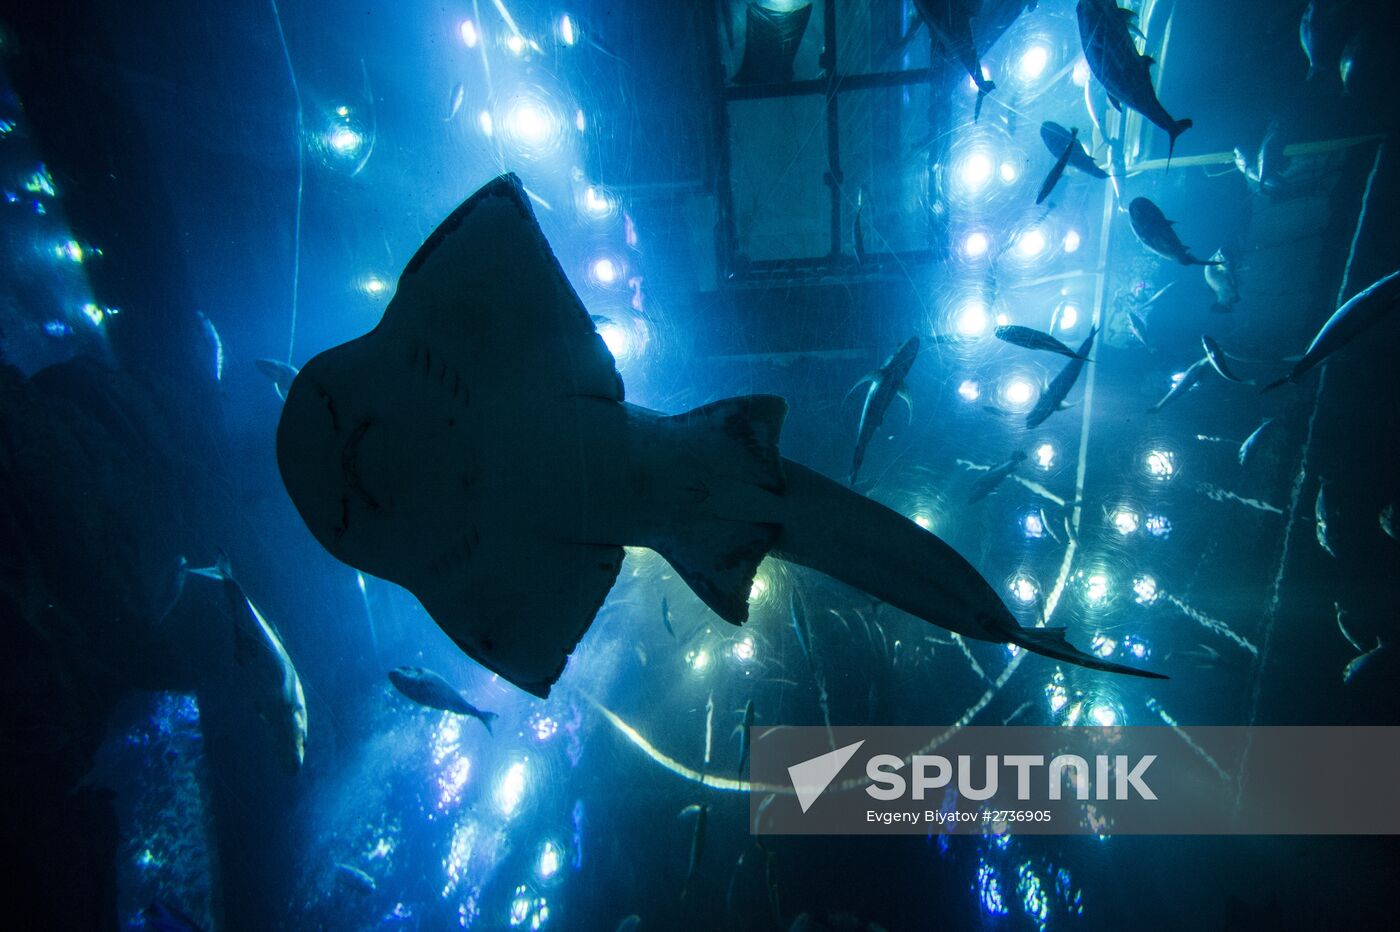 The Dubai Aquarium & Underwater Zoo